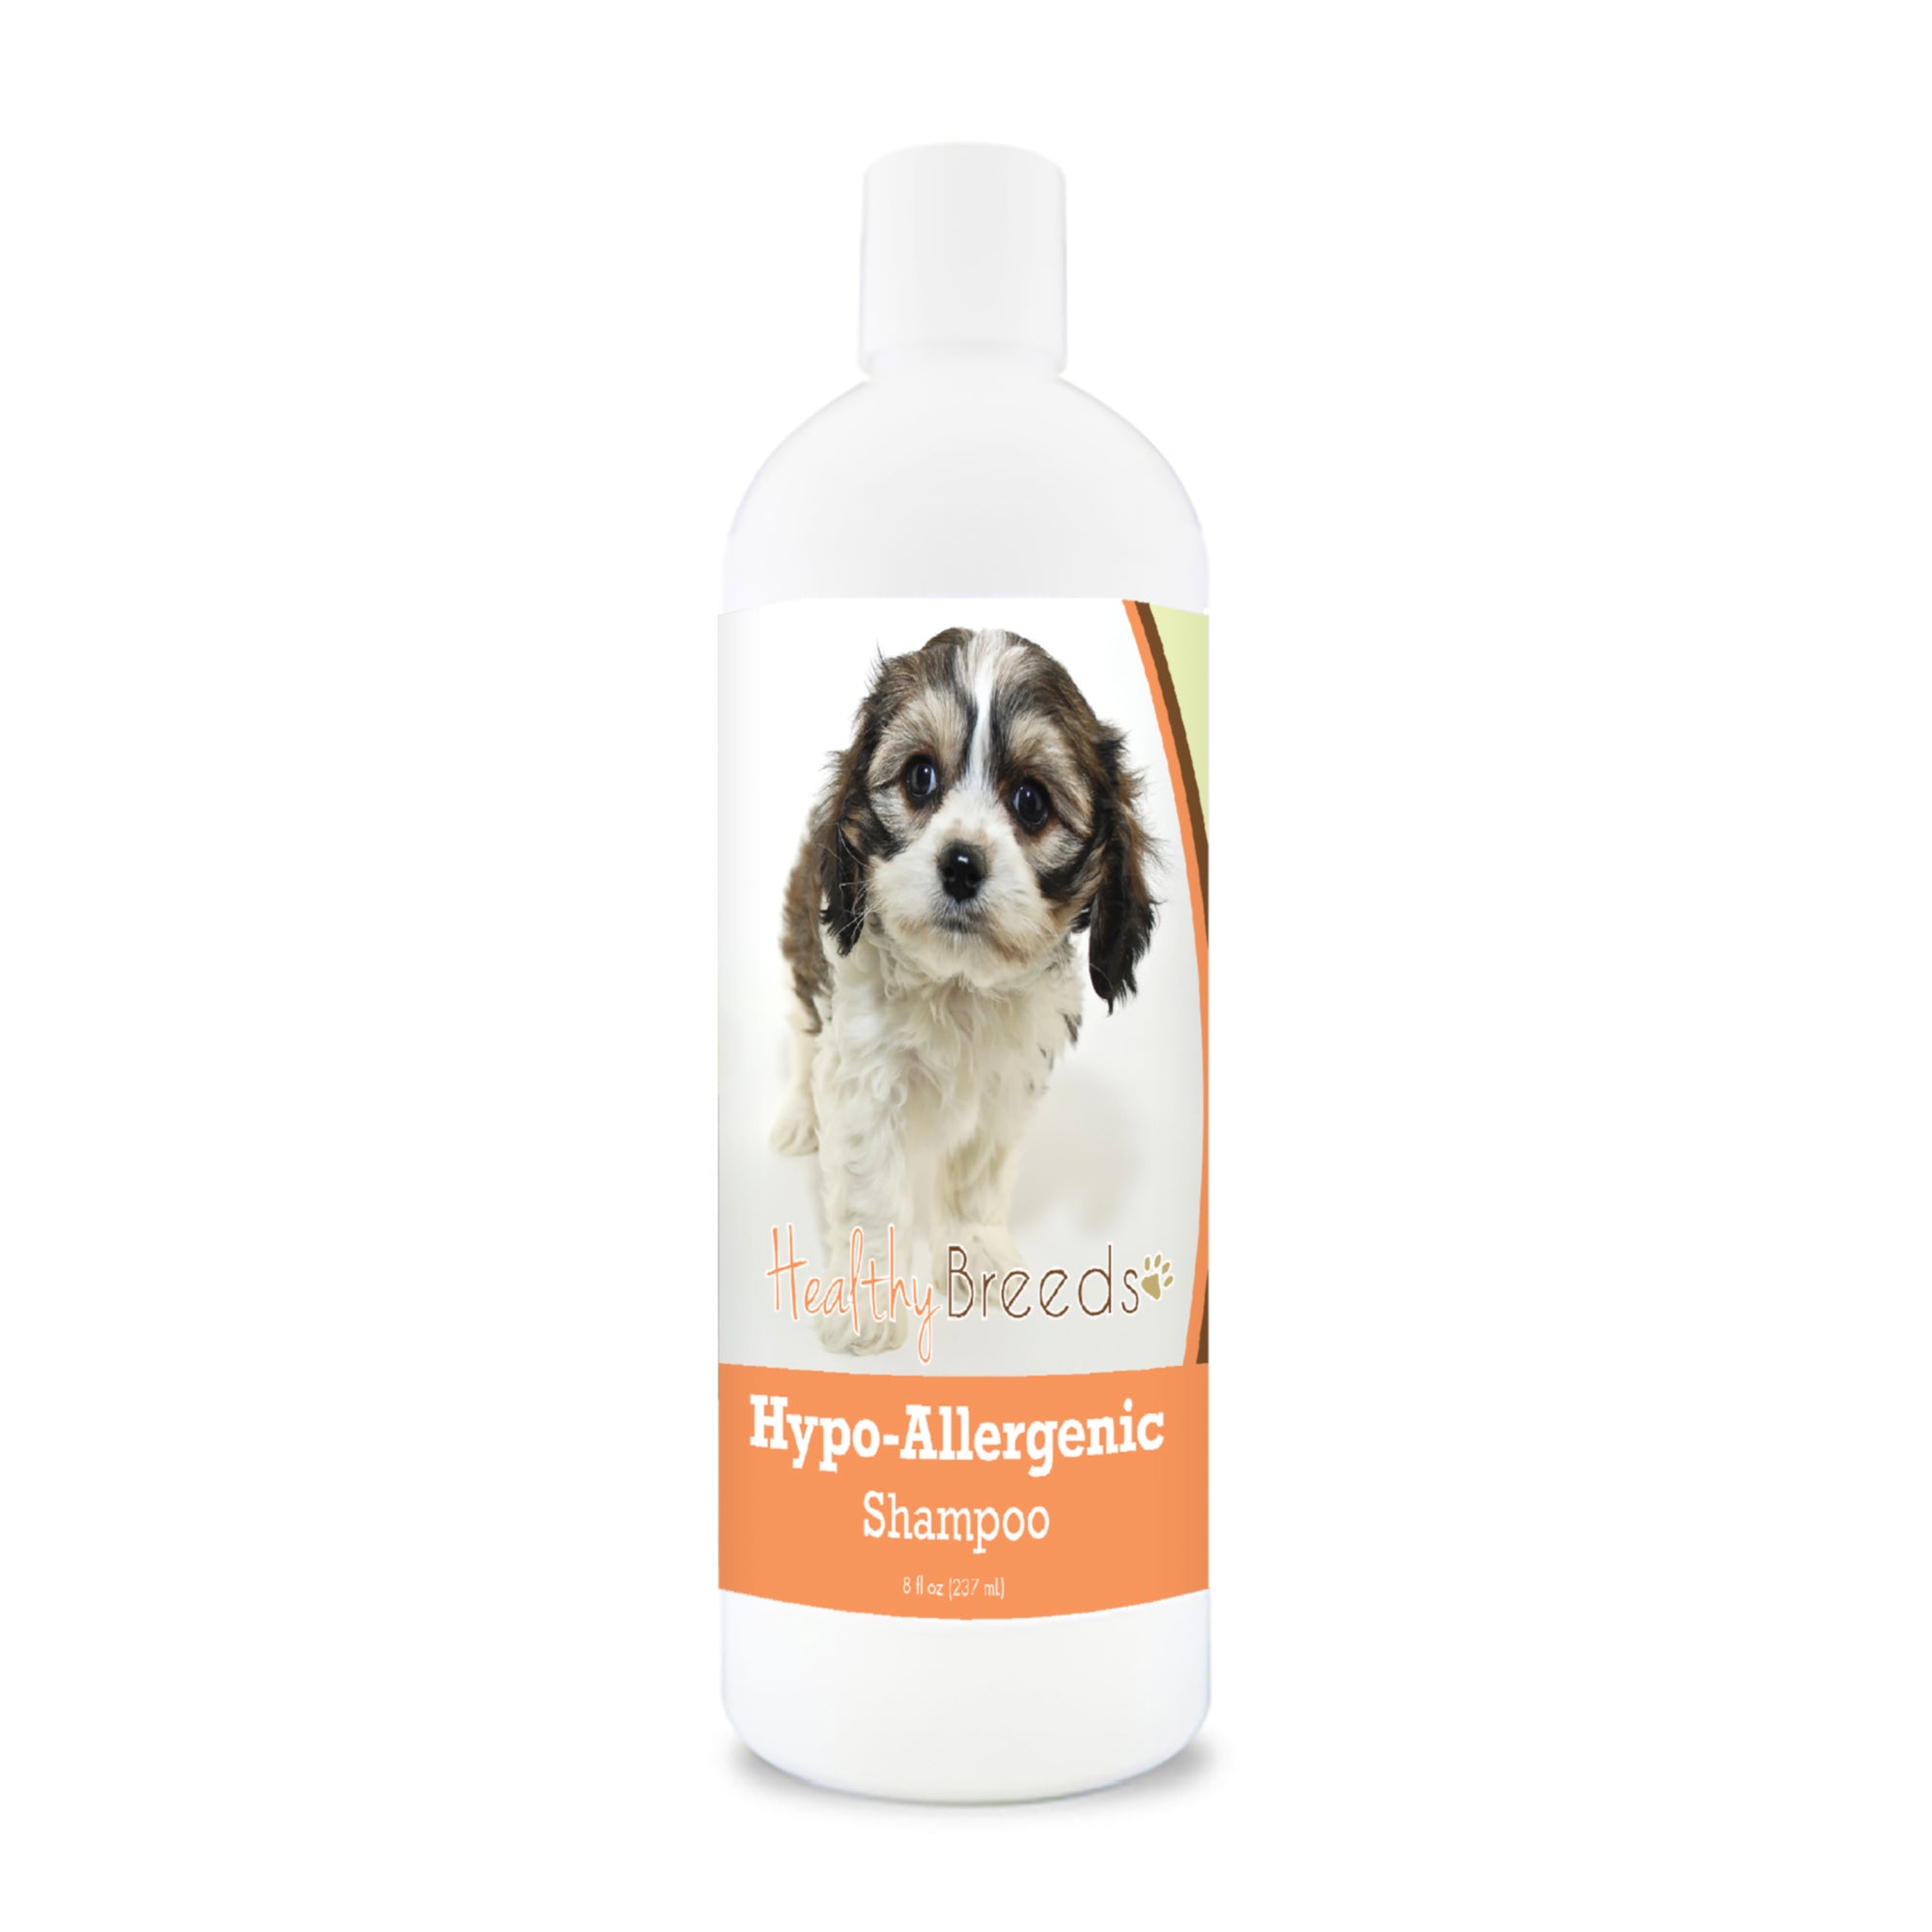 Cavachon Hypo-Allergenic Shampoo 8 oz